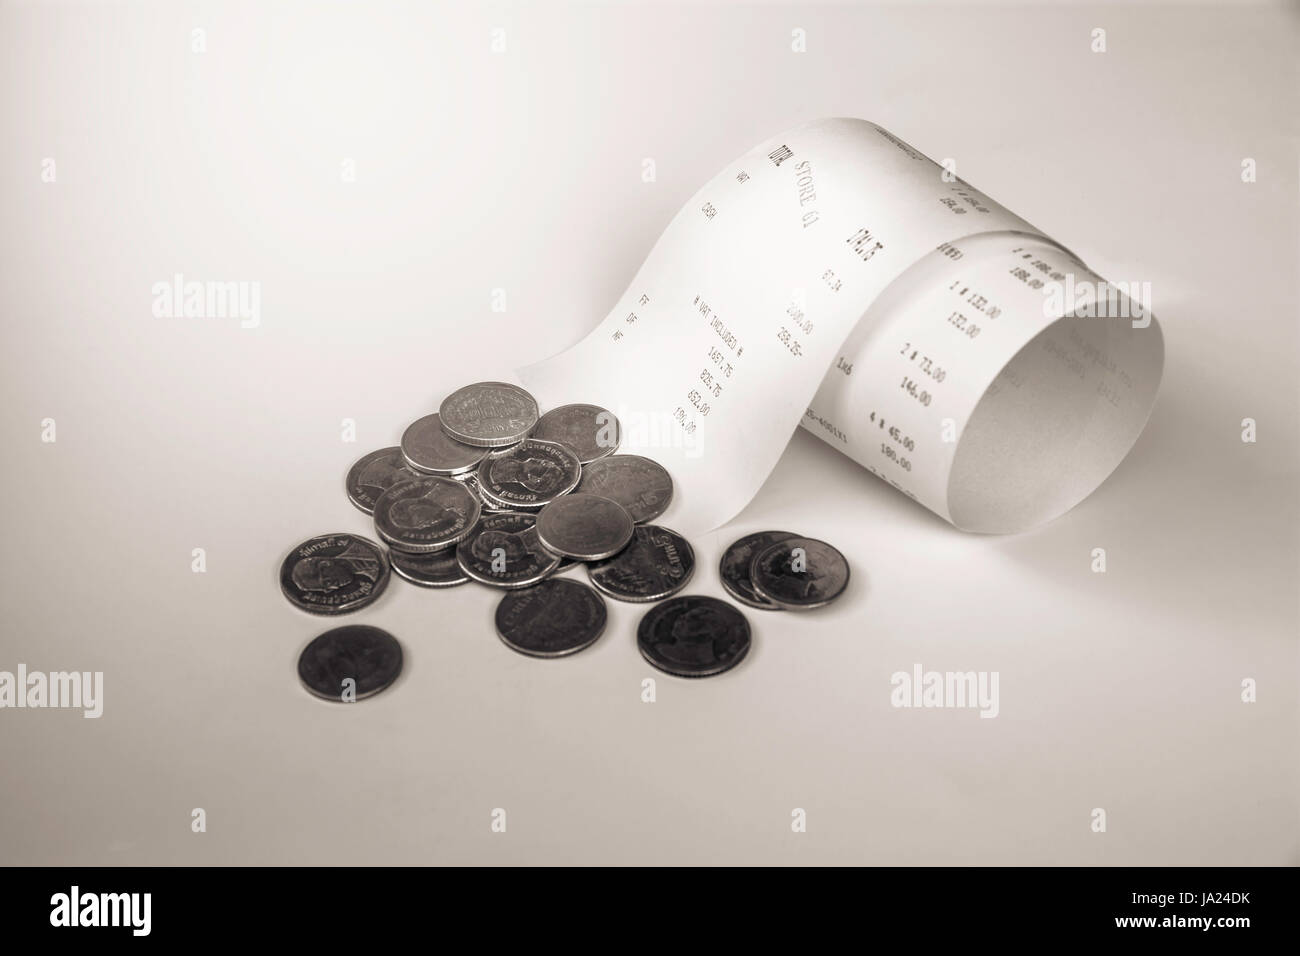 Quittung Rechnung, Geld Bargeld. Papierrechnung mit Münzen schwarz-weiß Stil. Stockfoto